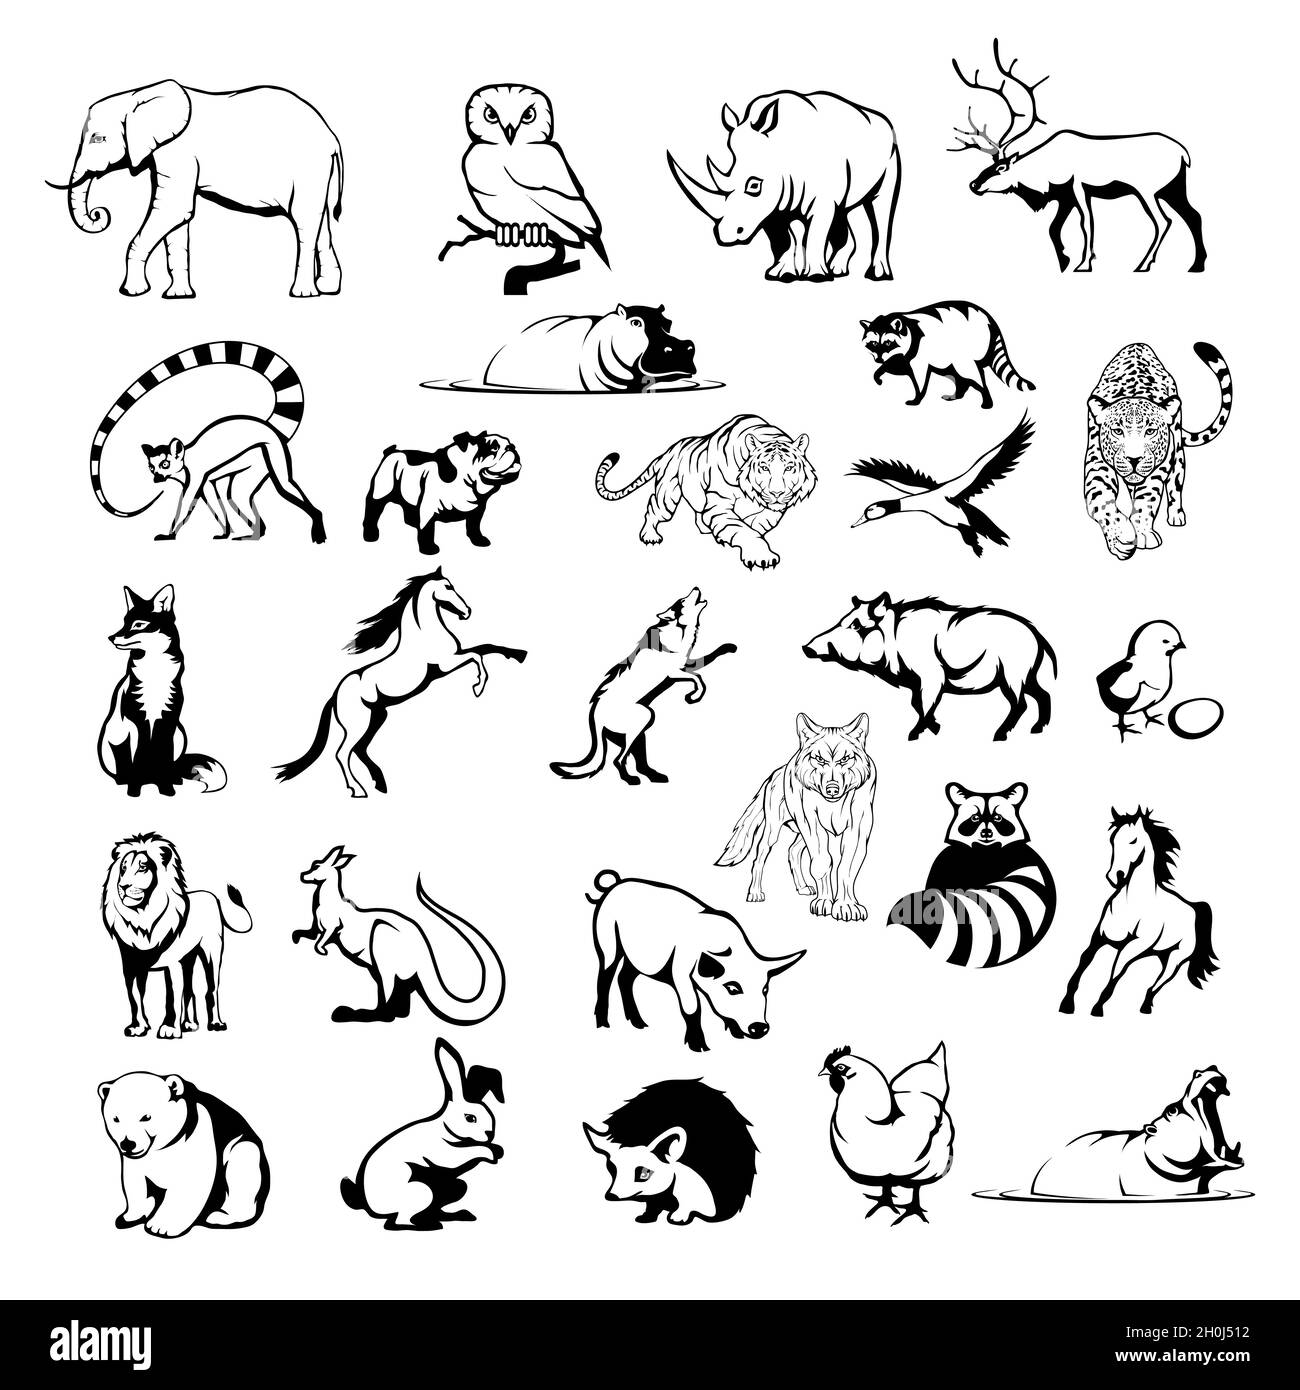 logo animaux, carnivores dangereux, divers animaux pour votre logo, ensemble de différents animaux domestiques et sauvages de la forêt, tête d'animaux, conception plate, vecto Illustration de Vecteur